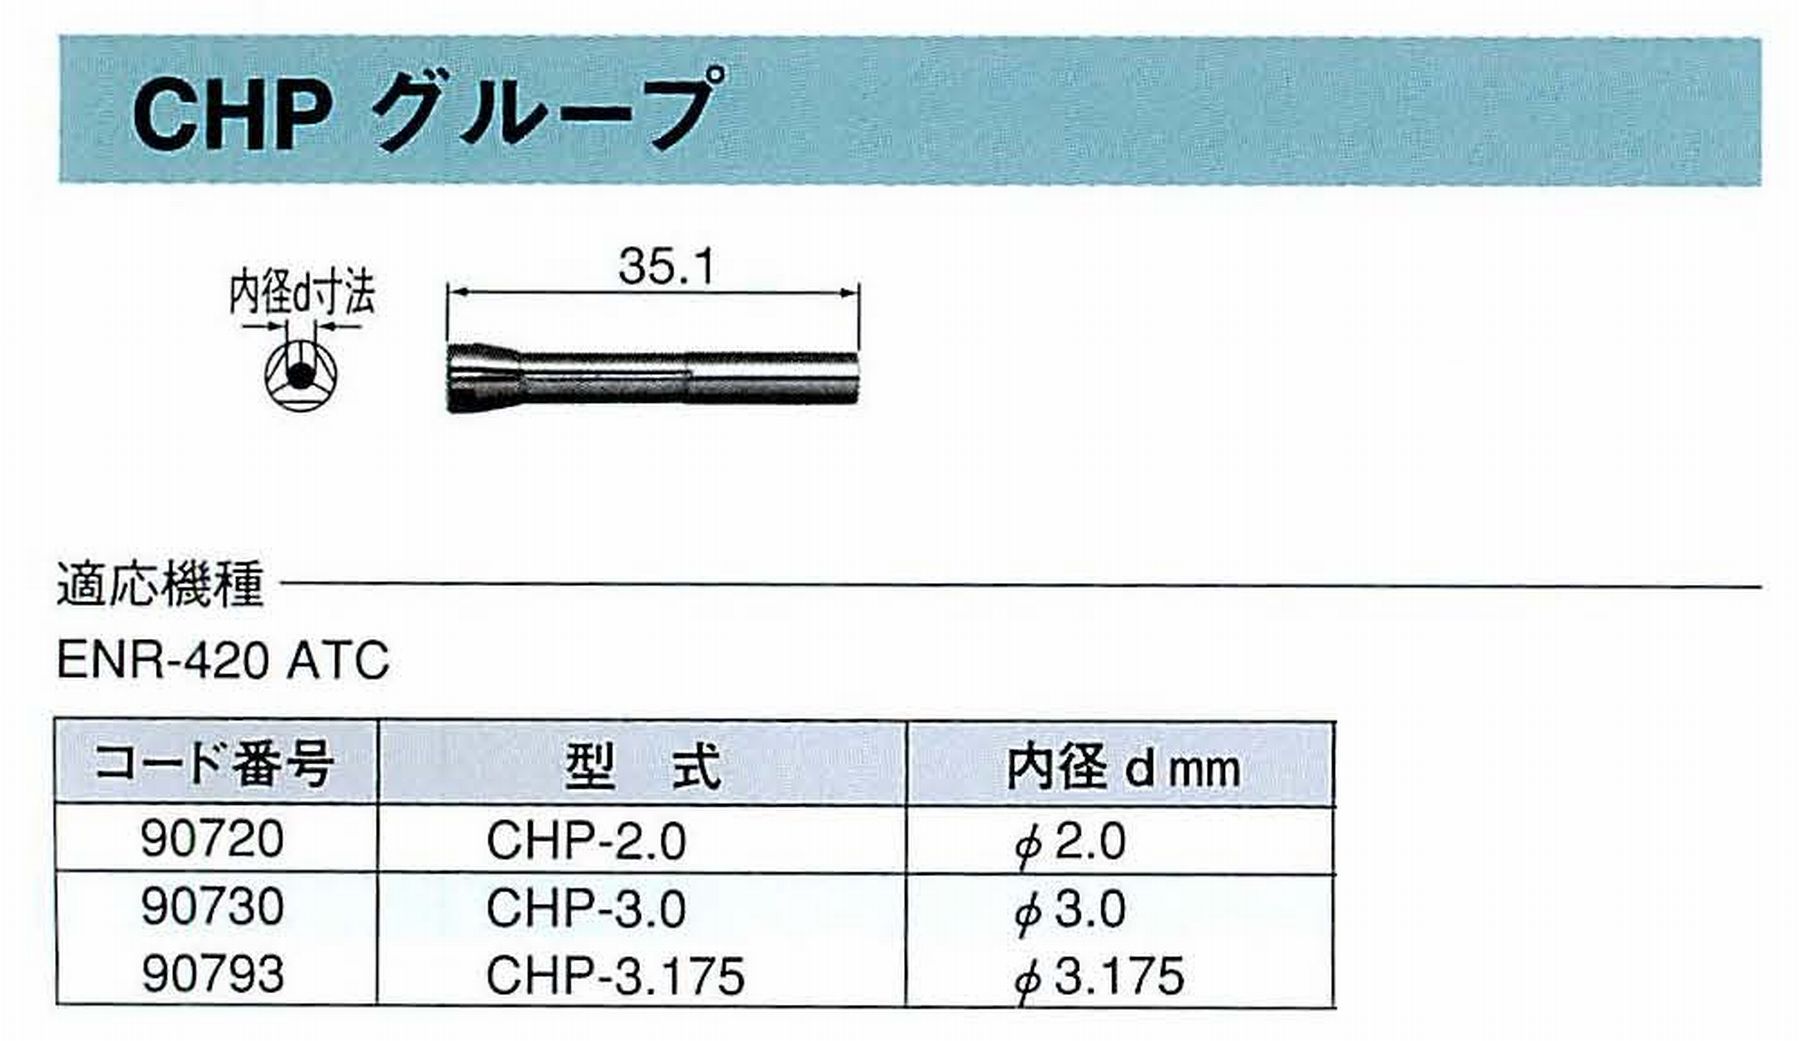 ナカニシ/NAKANISHI コレットチャック コード番号 90730 型式 CHP-3.0 内径:Φ3.0